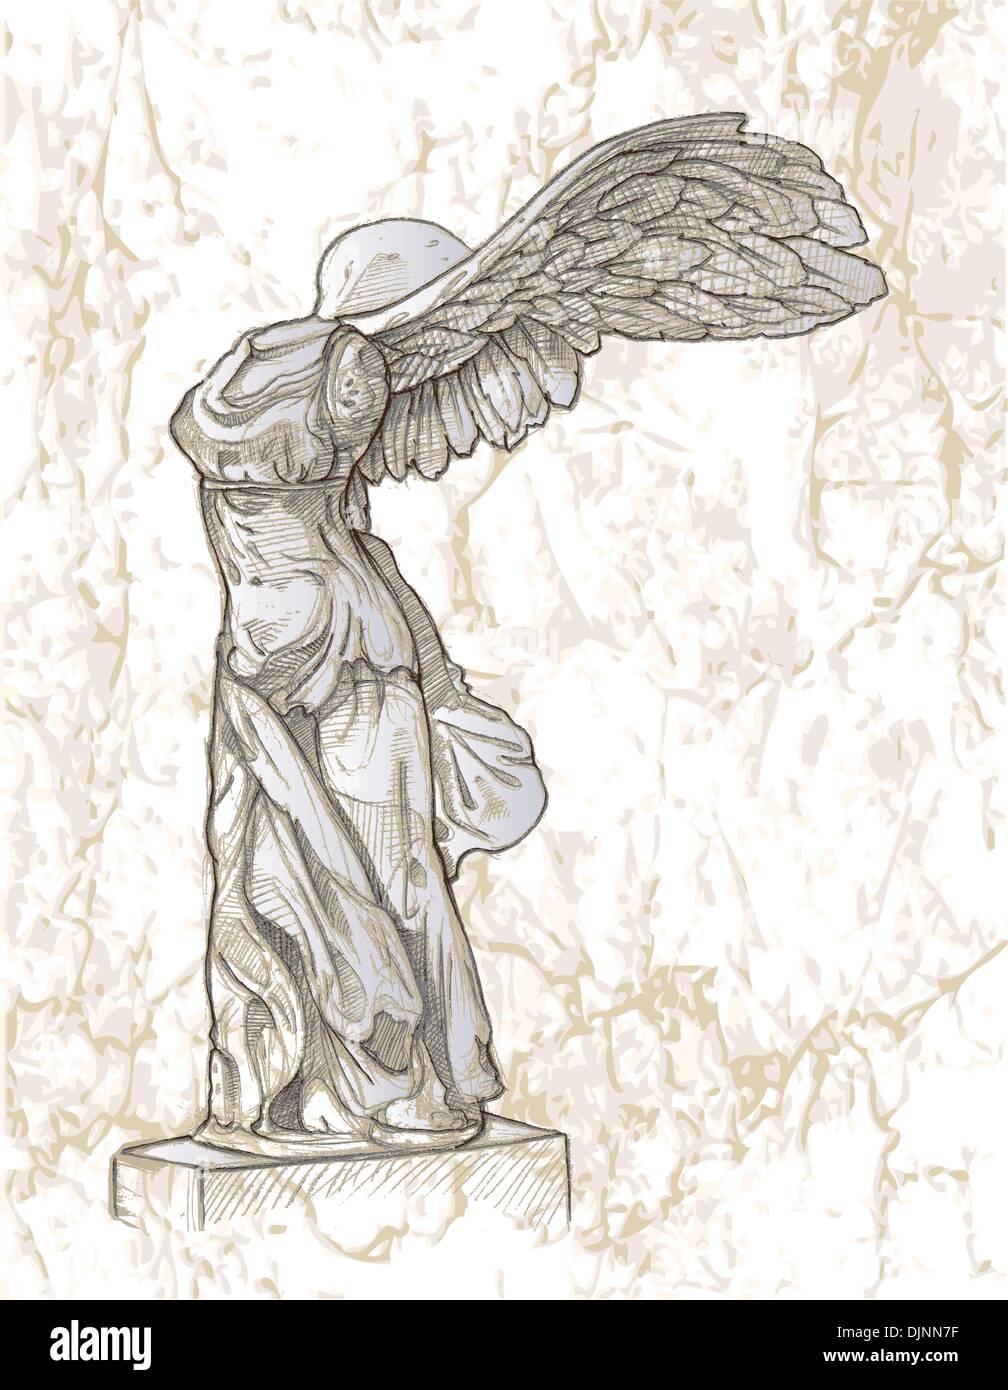 erectie Slapen Sluit een verzekering af Hand drawn statue of Nike of Samothrace Stock Vector Image & Art - Alamy